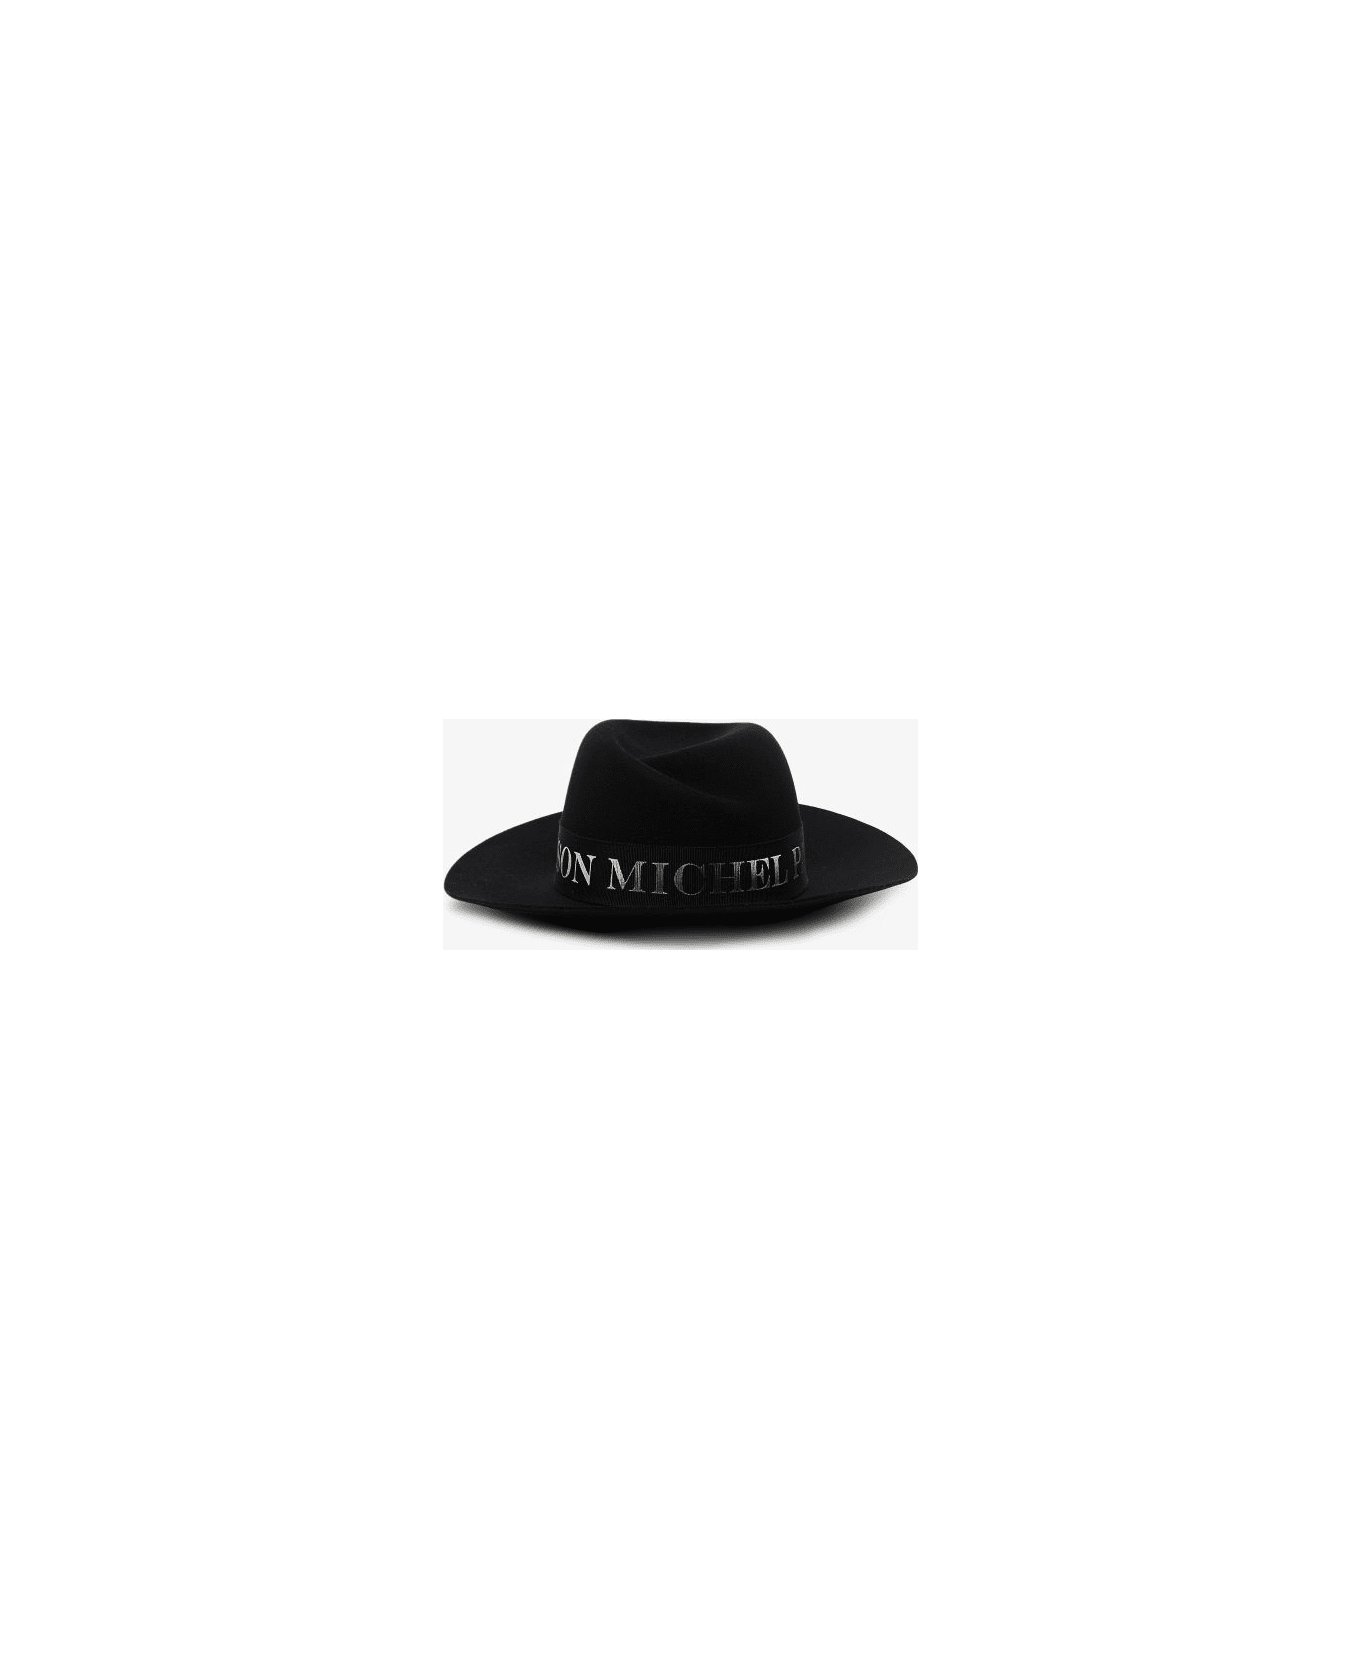 Maison Michel Hats - Black